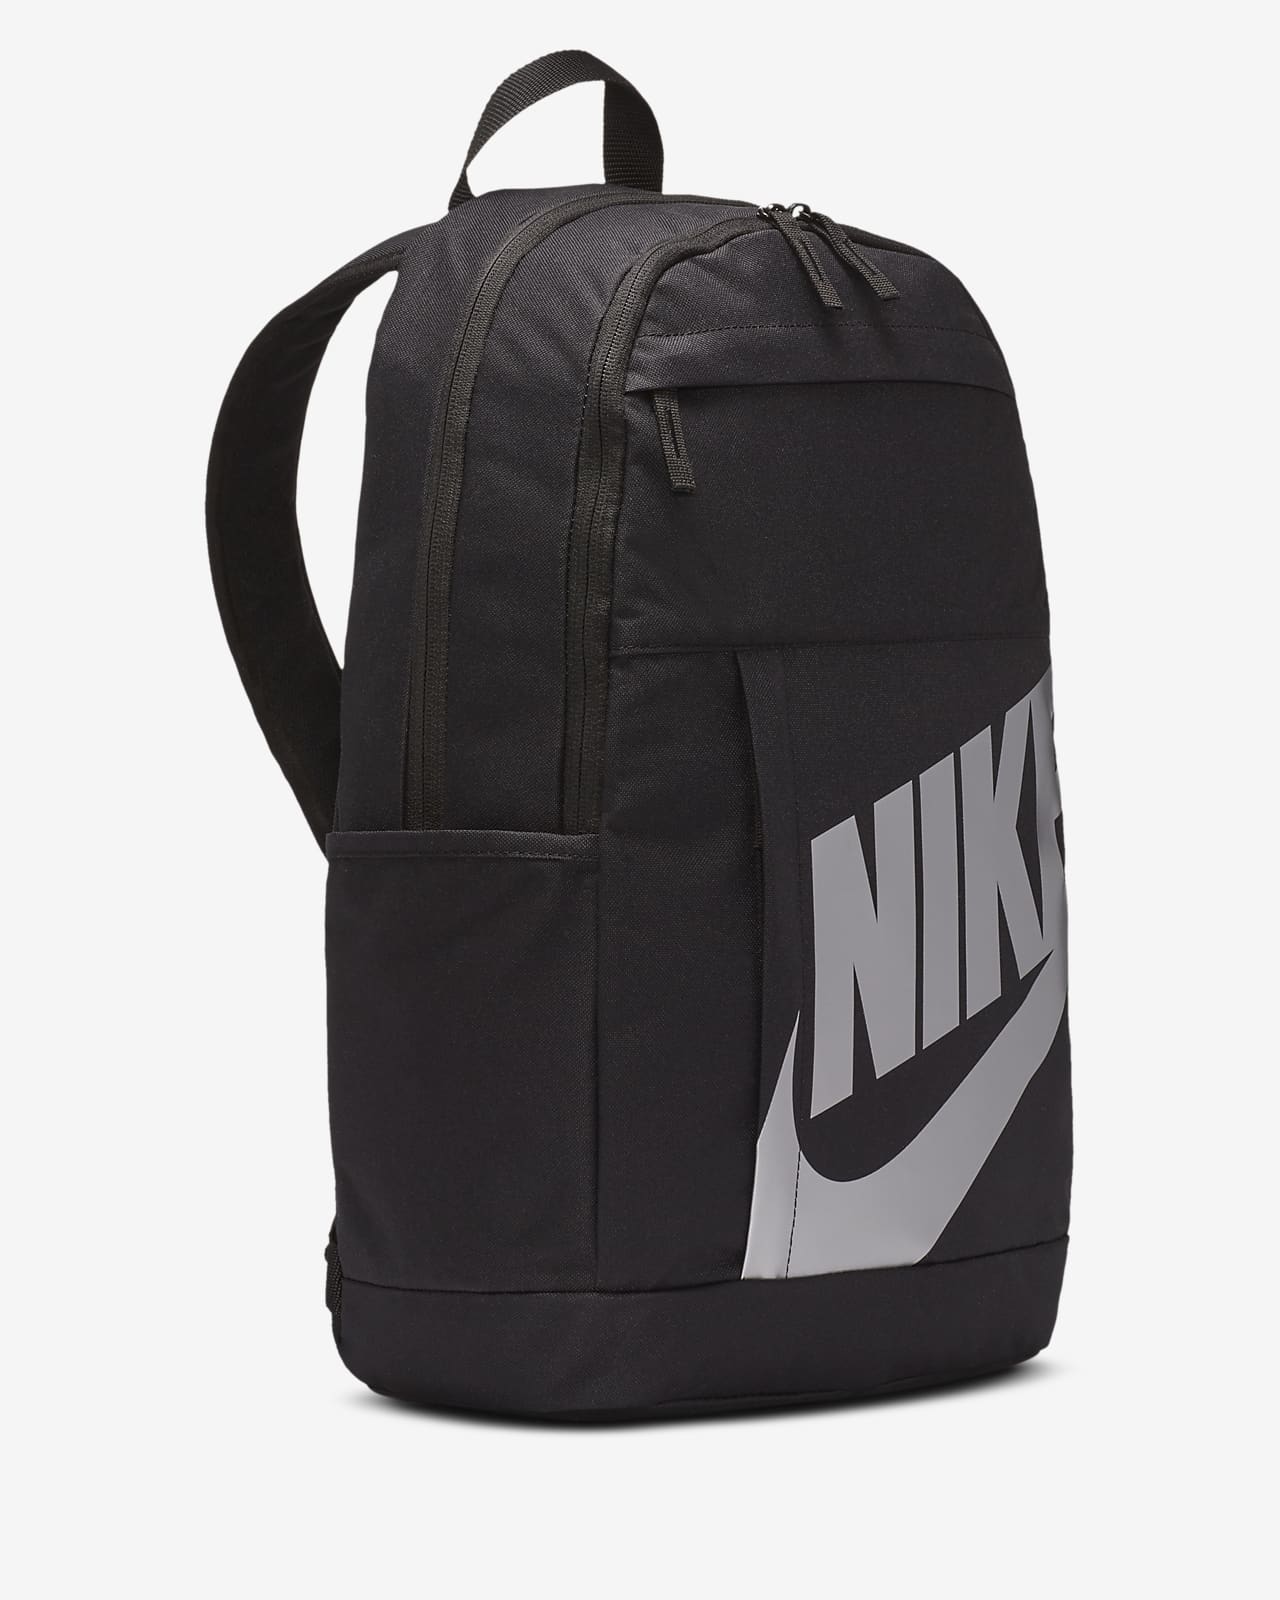 nike basic backpack 499